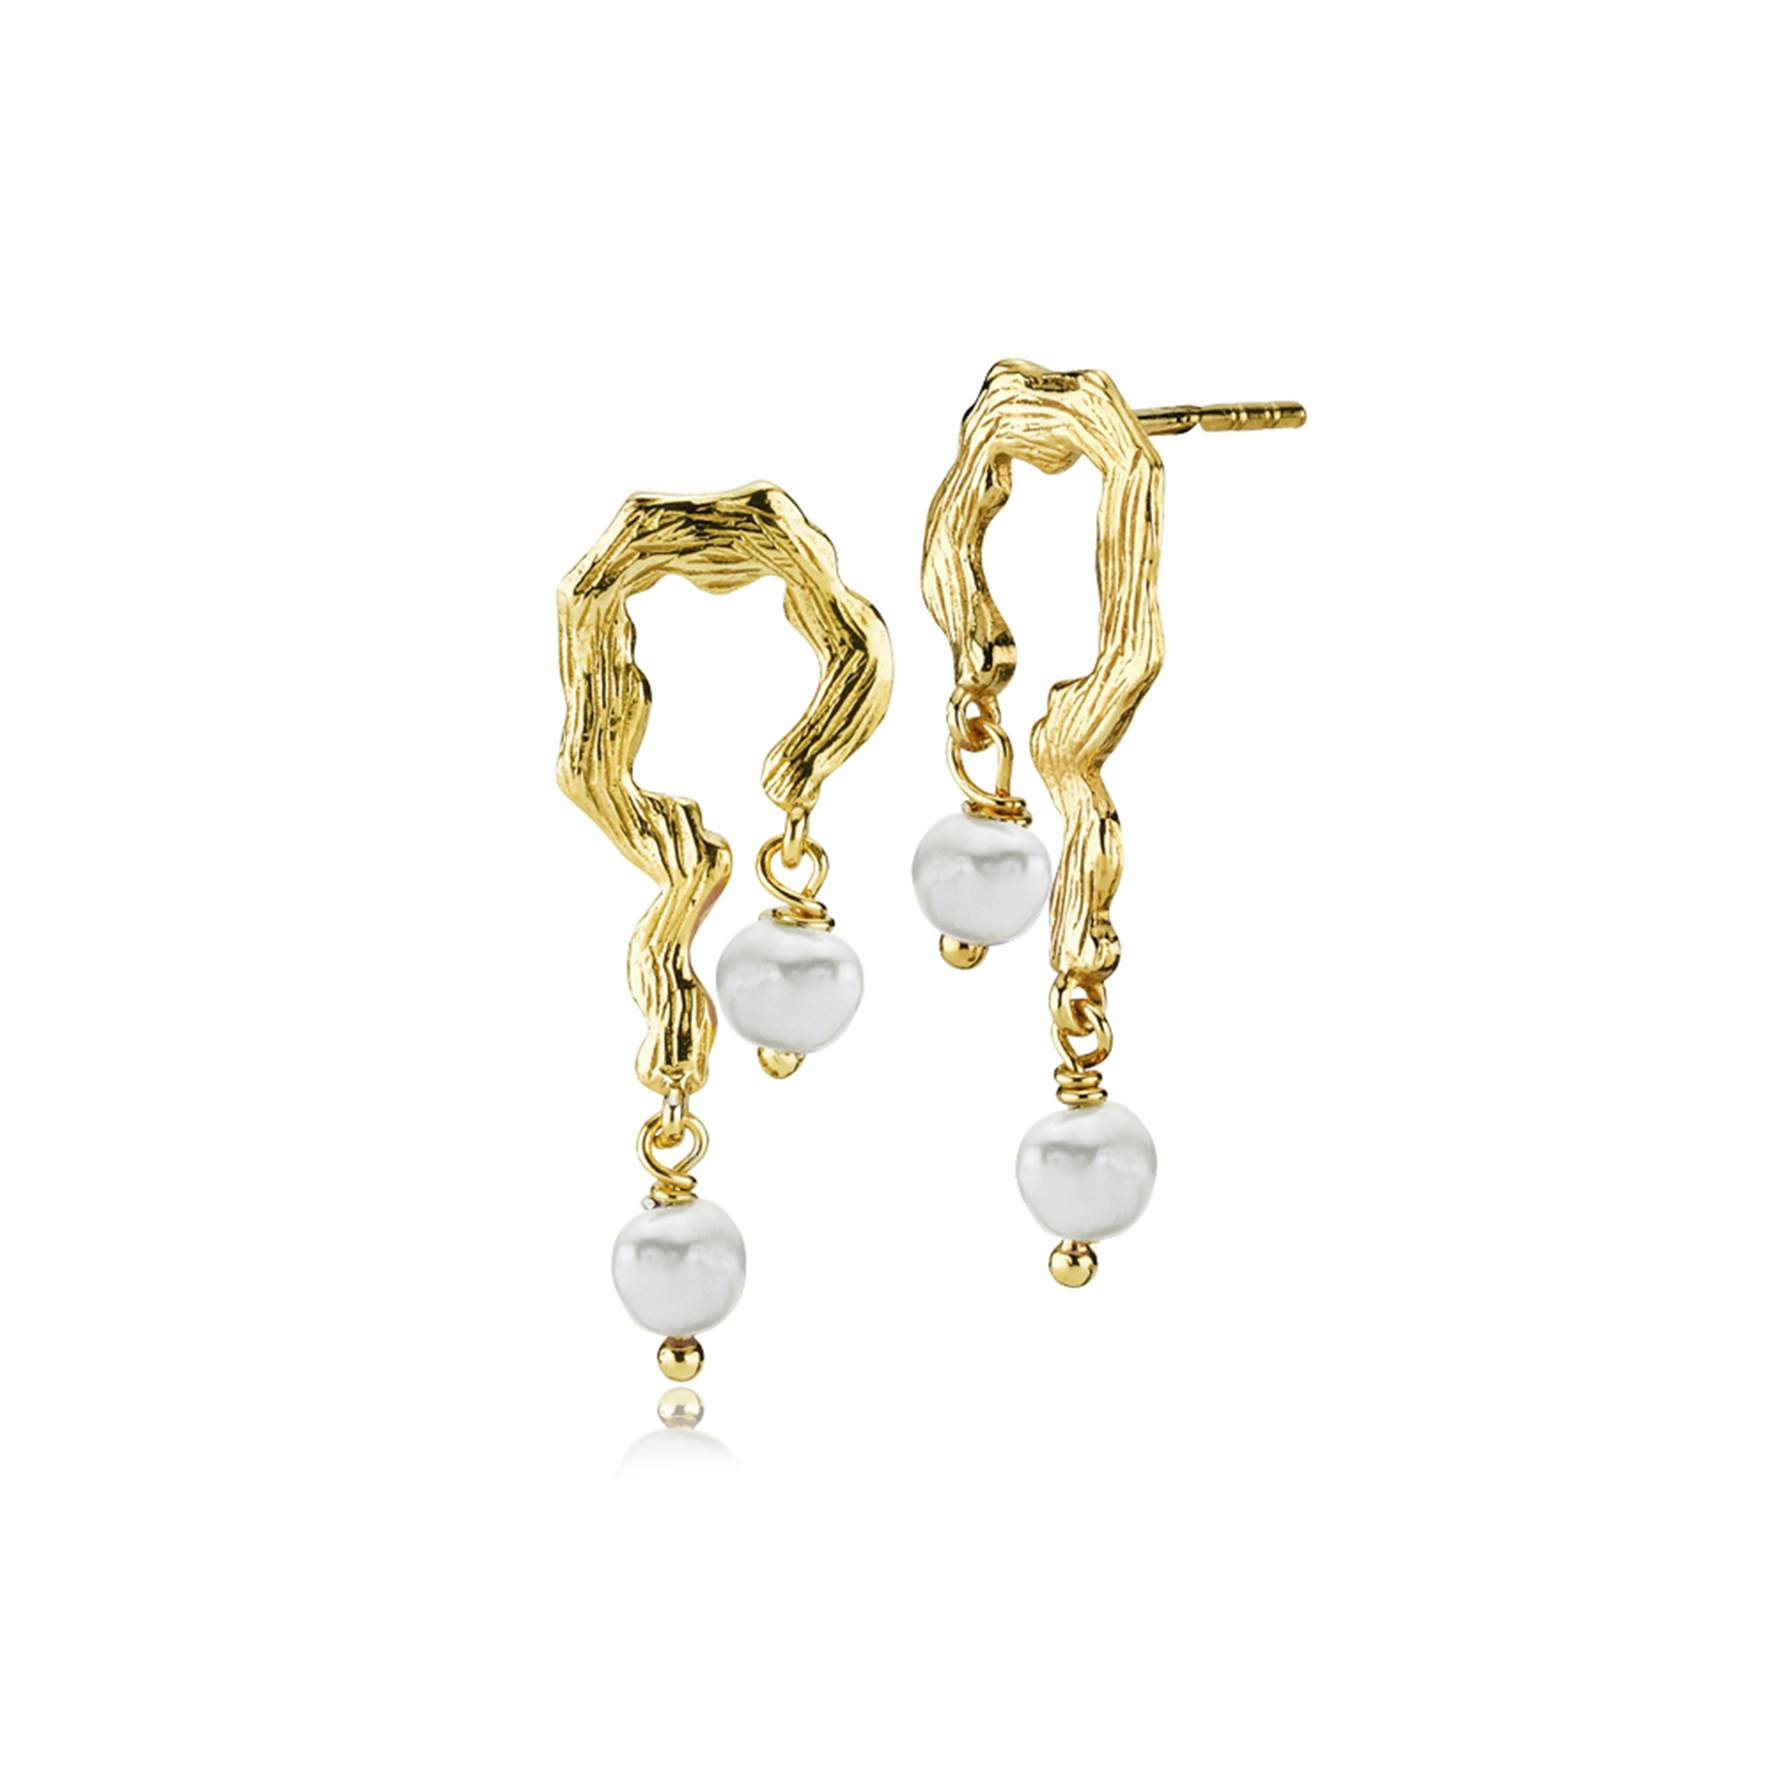 Lærke Bentsen By Sistie Earrings With Pearls von Sistie in Vergoldet-Silber Sterling 925|Freshwater Pearl